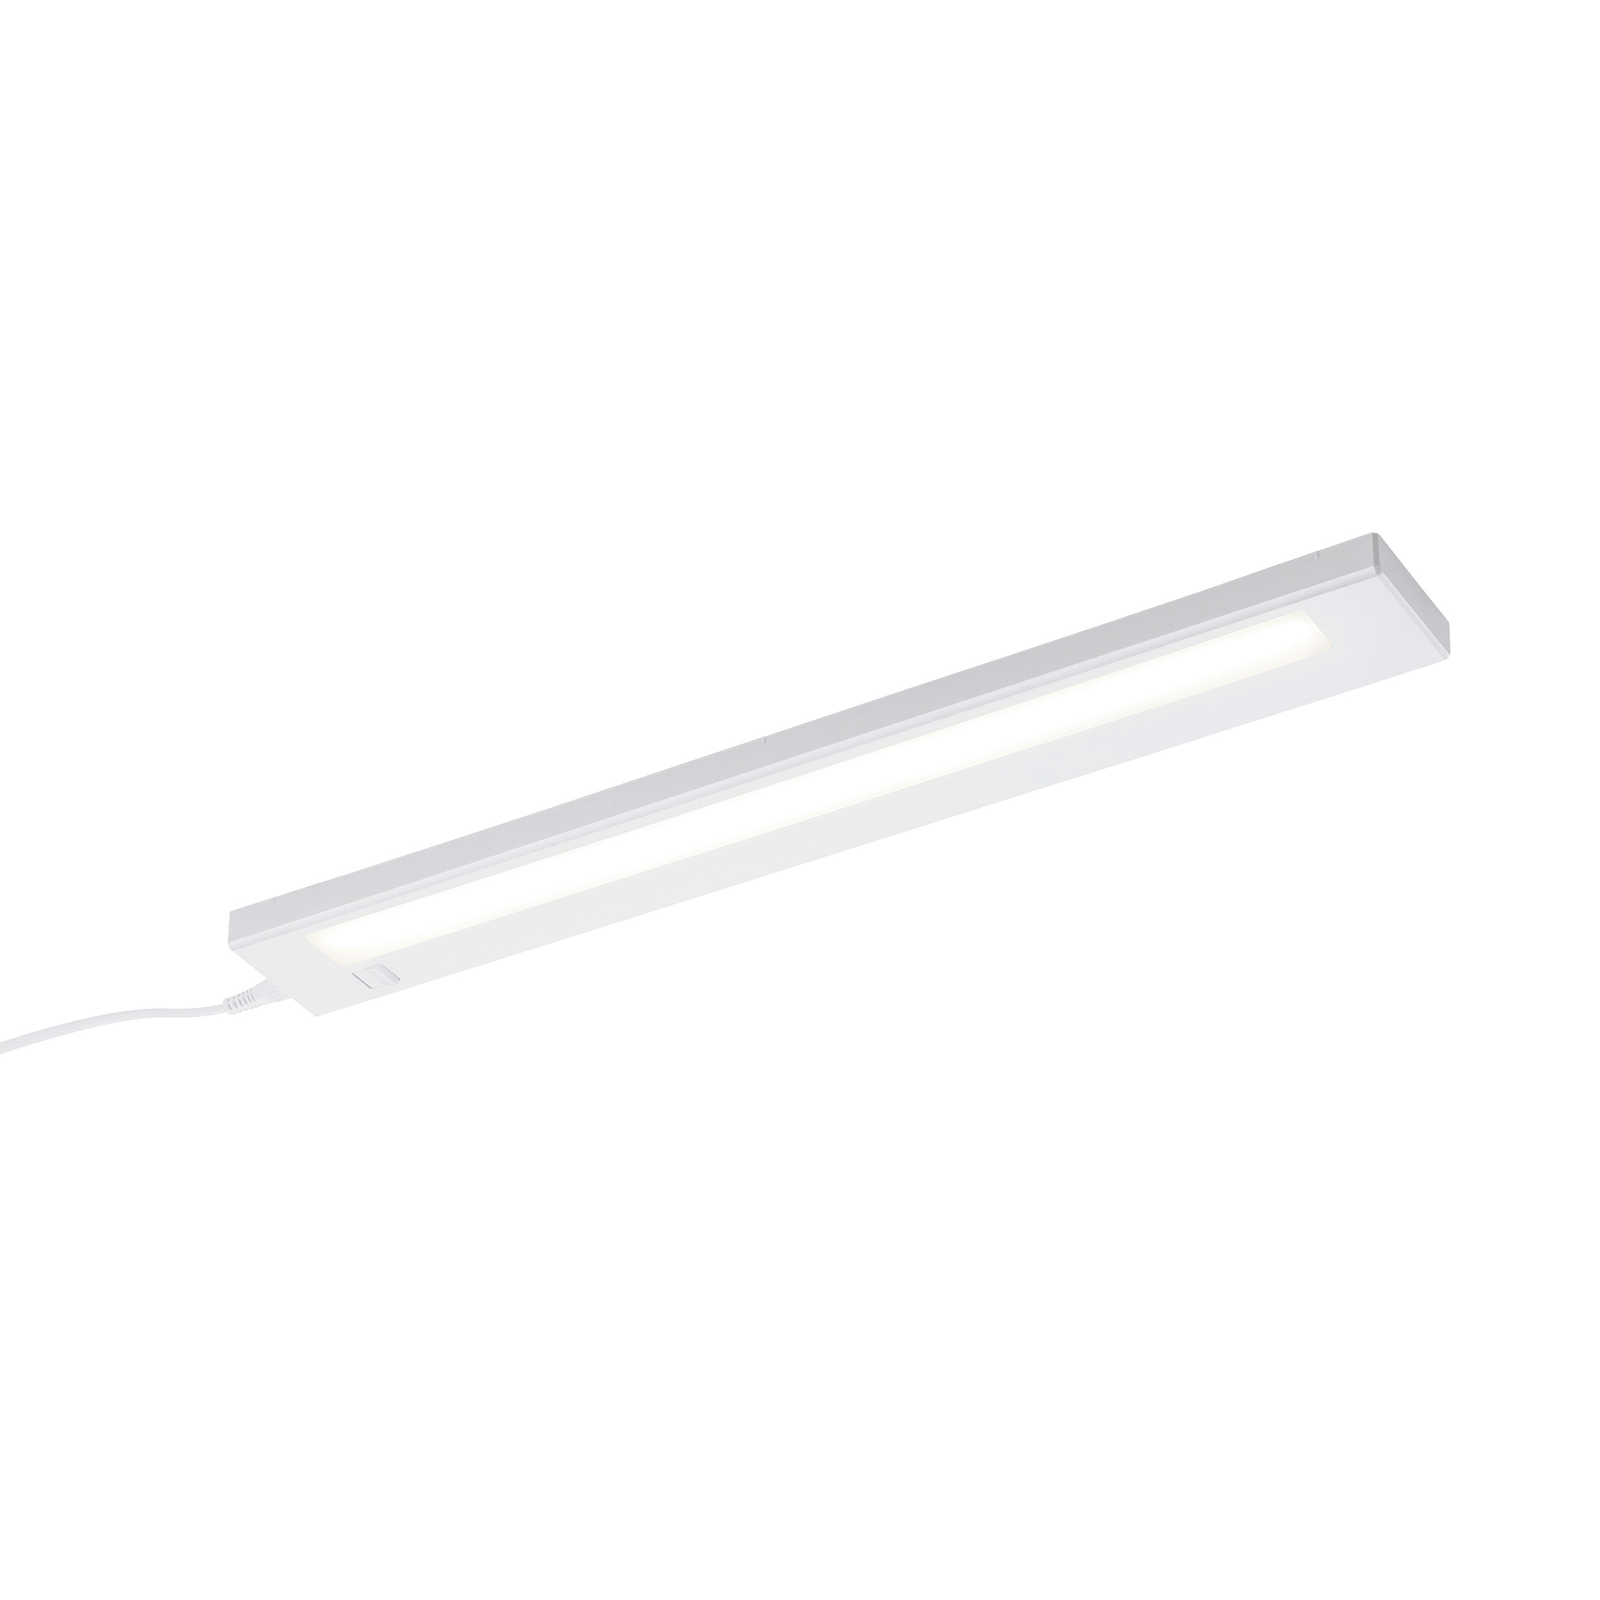 LED-benkbelysning Alino, hvit, 55 cm lang